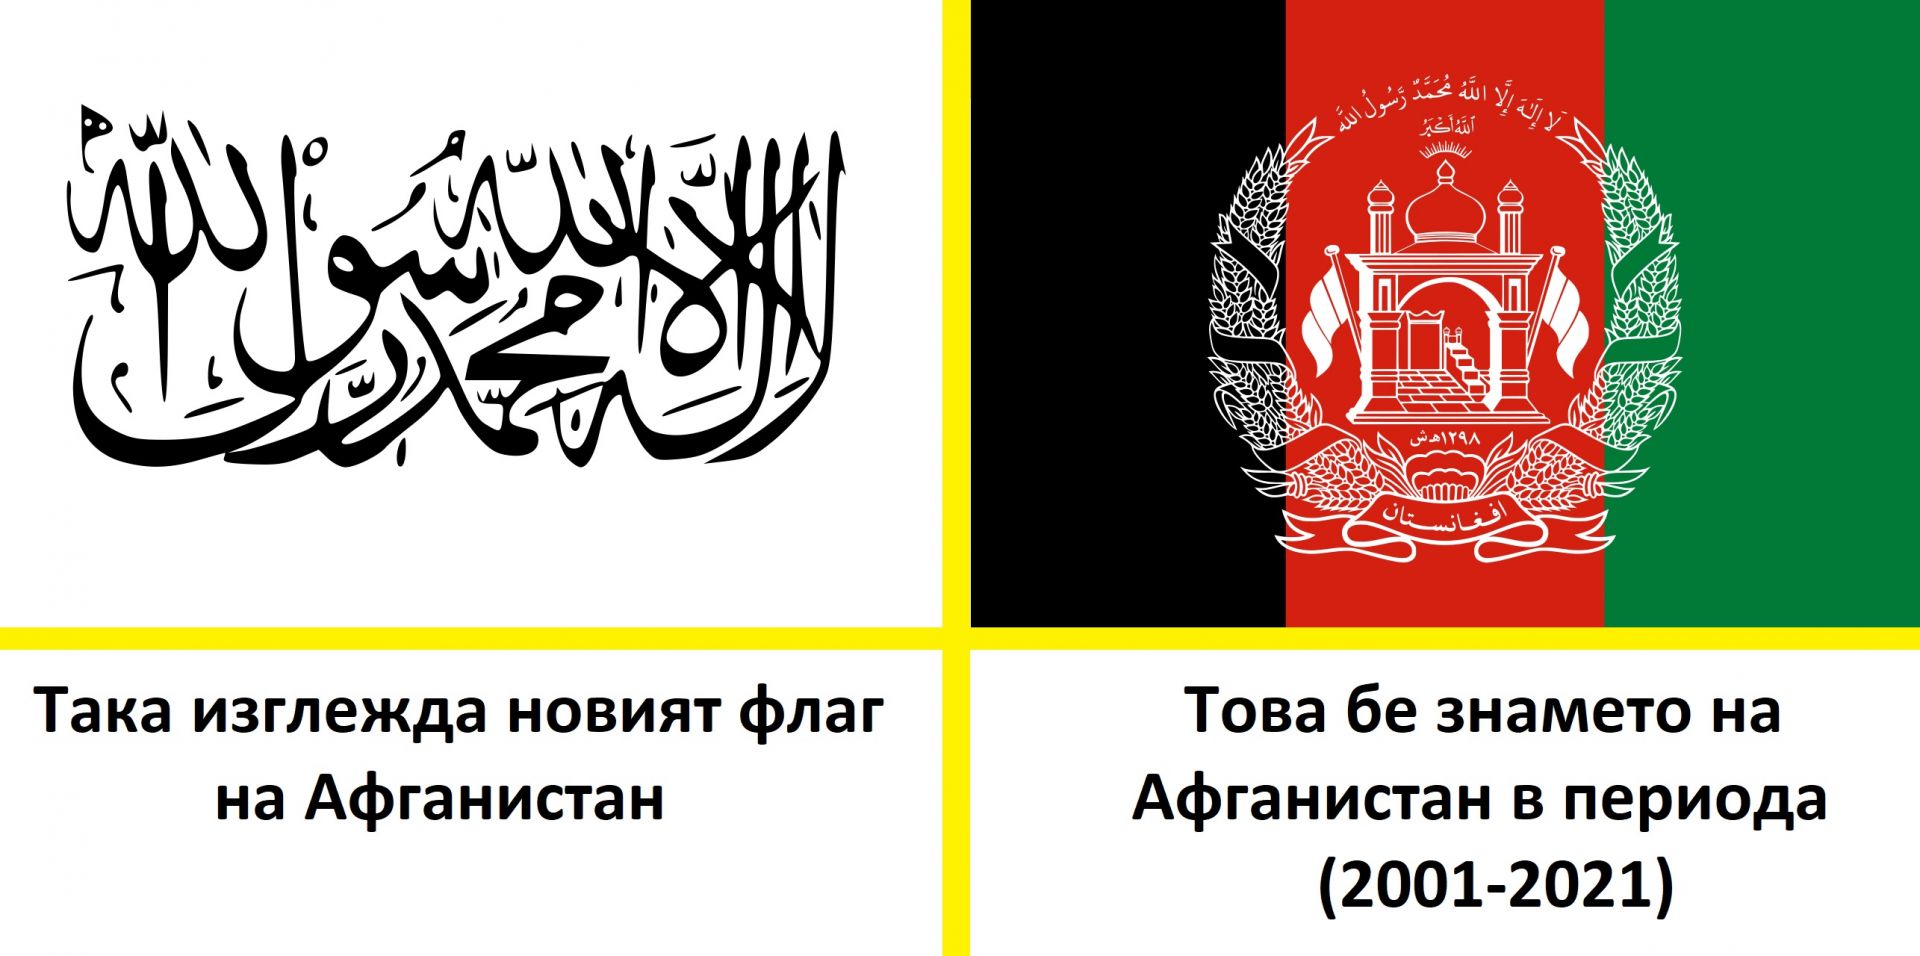 Новото и старото знаме на Афганистан